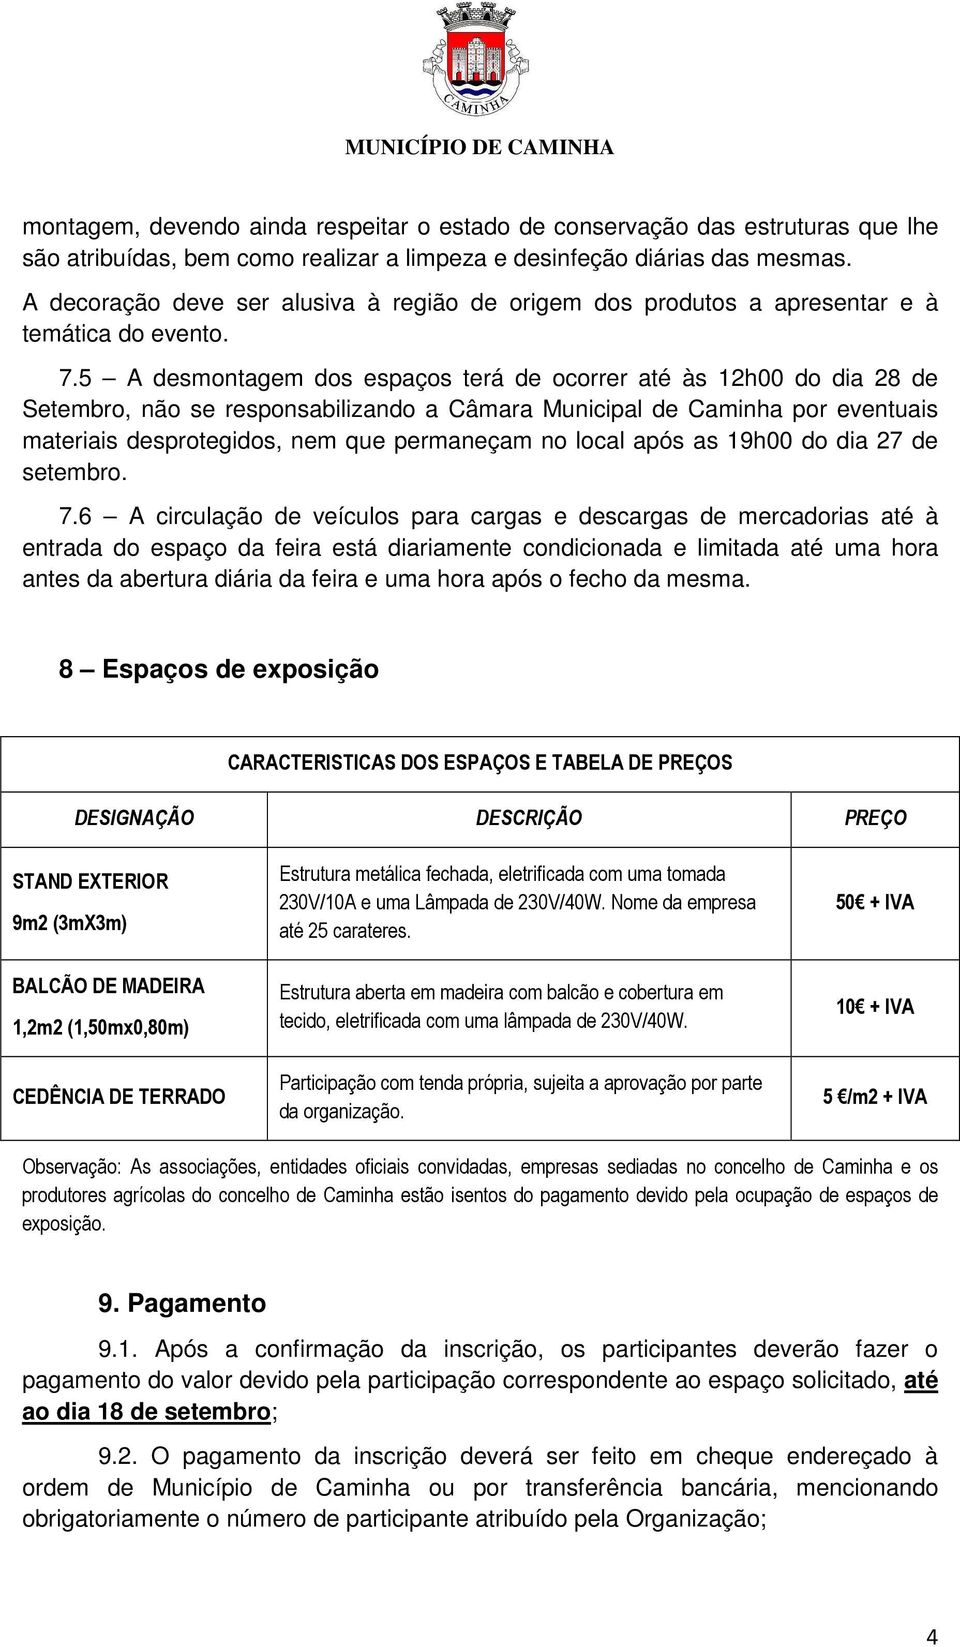 5 A desmontagem dos espaços terá de ocorrer até às 12h00 do dia 28 de Setembro, não se responsabilizando a Câmara Municipal de Caminha por eventuais materiais desprotegidos, nem que permaneçam no